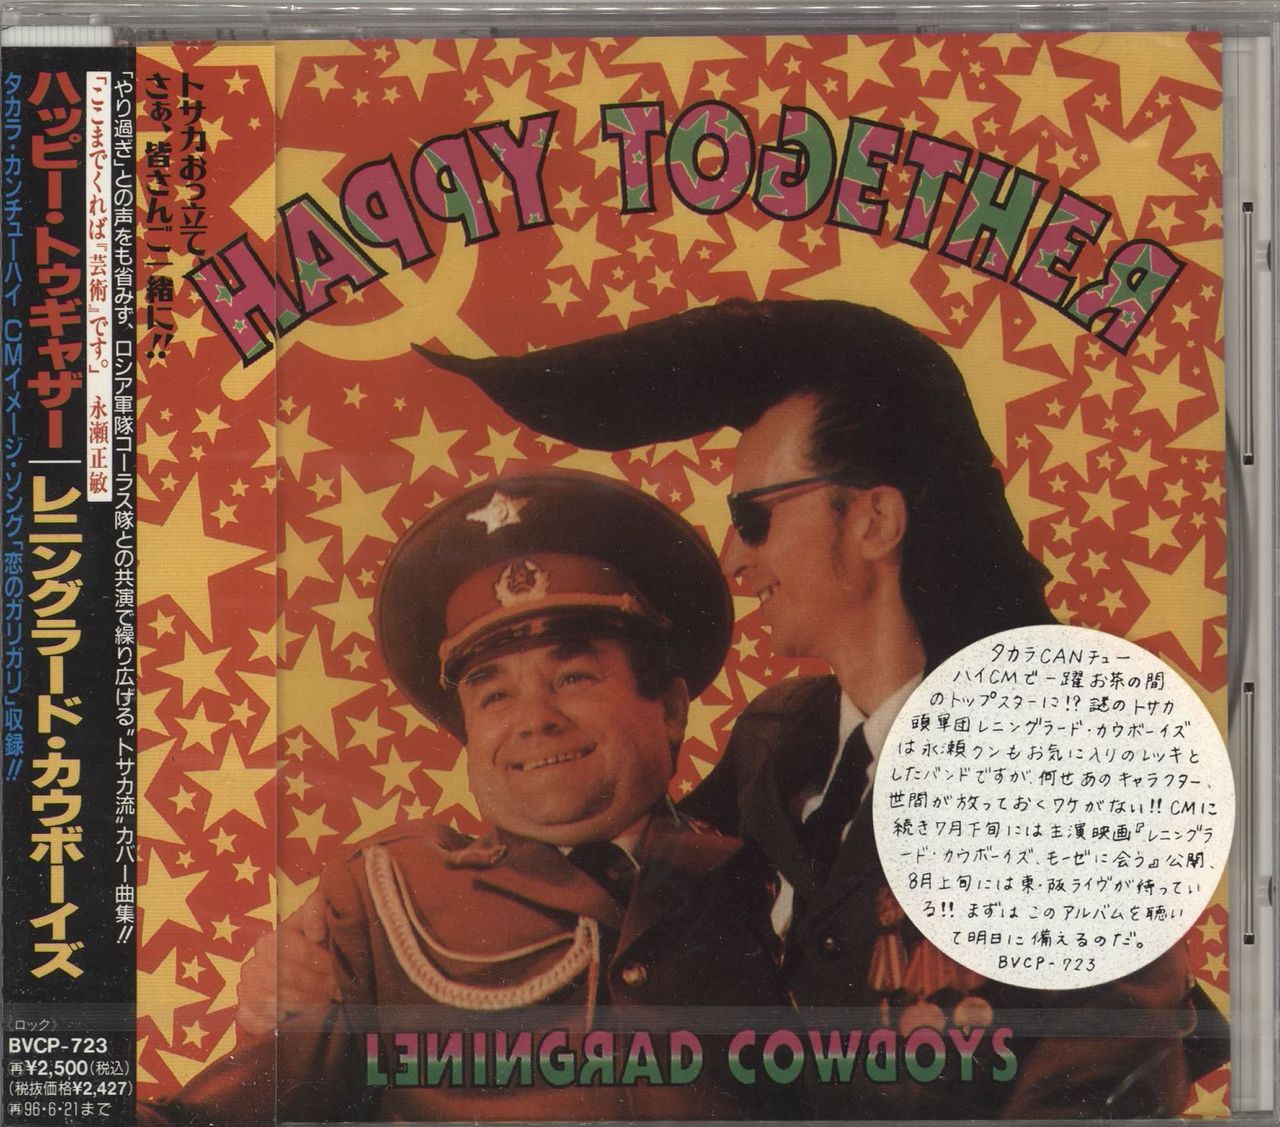 Cowboys Happy Together Japanese Promo album — RareVinyl.com